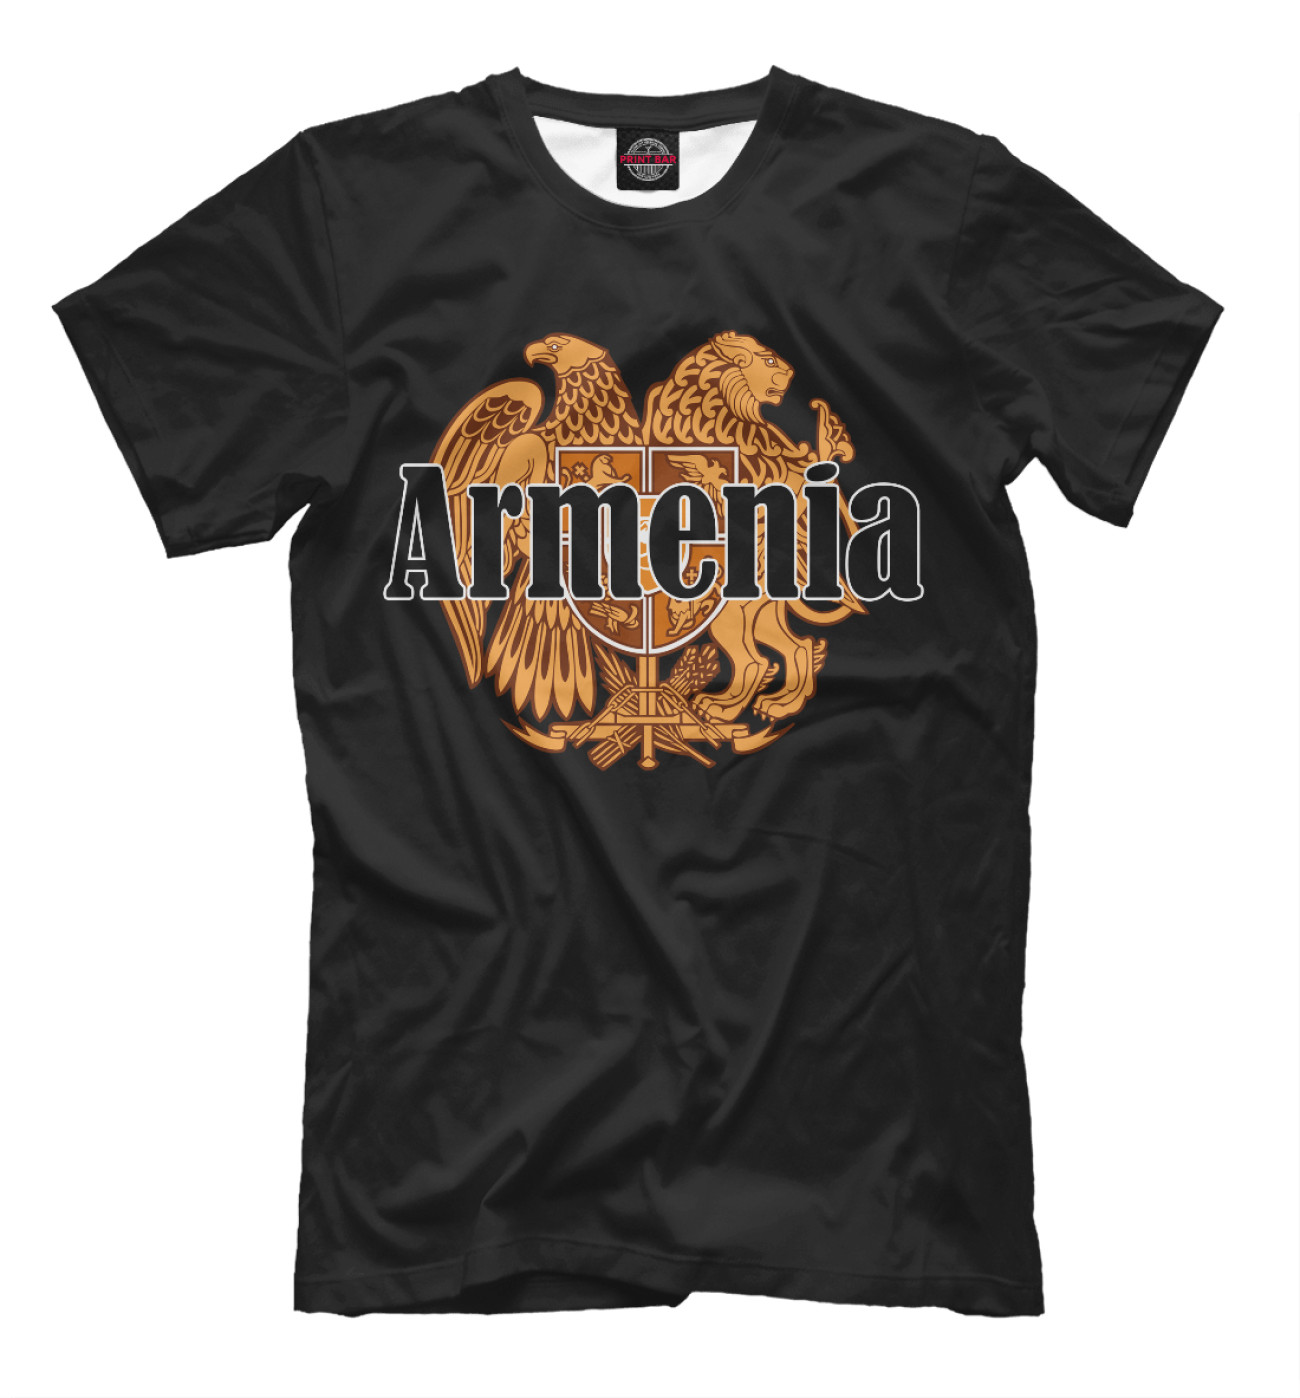 Мужская Футболка Armenia, артикул: CTS-316500-fut-2